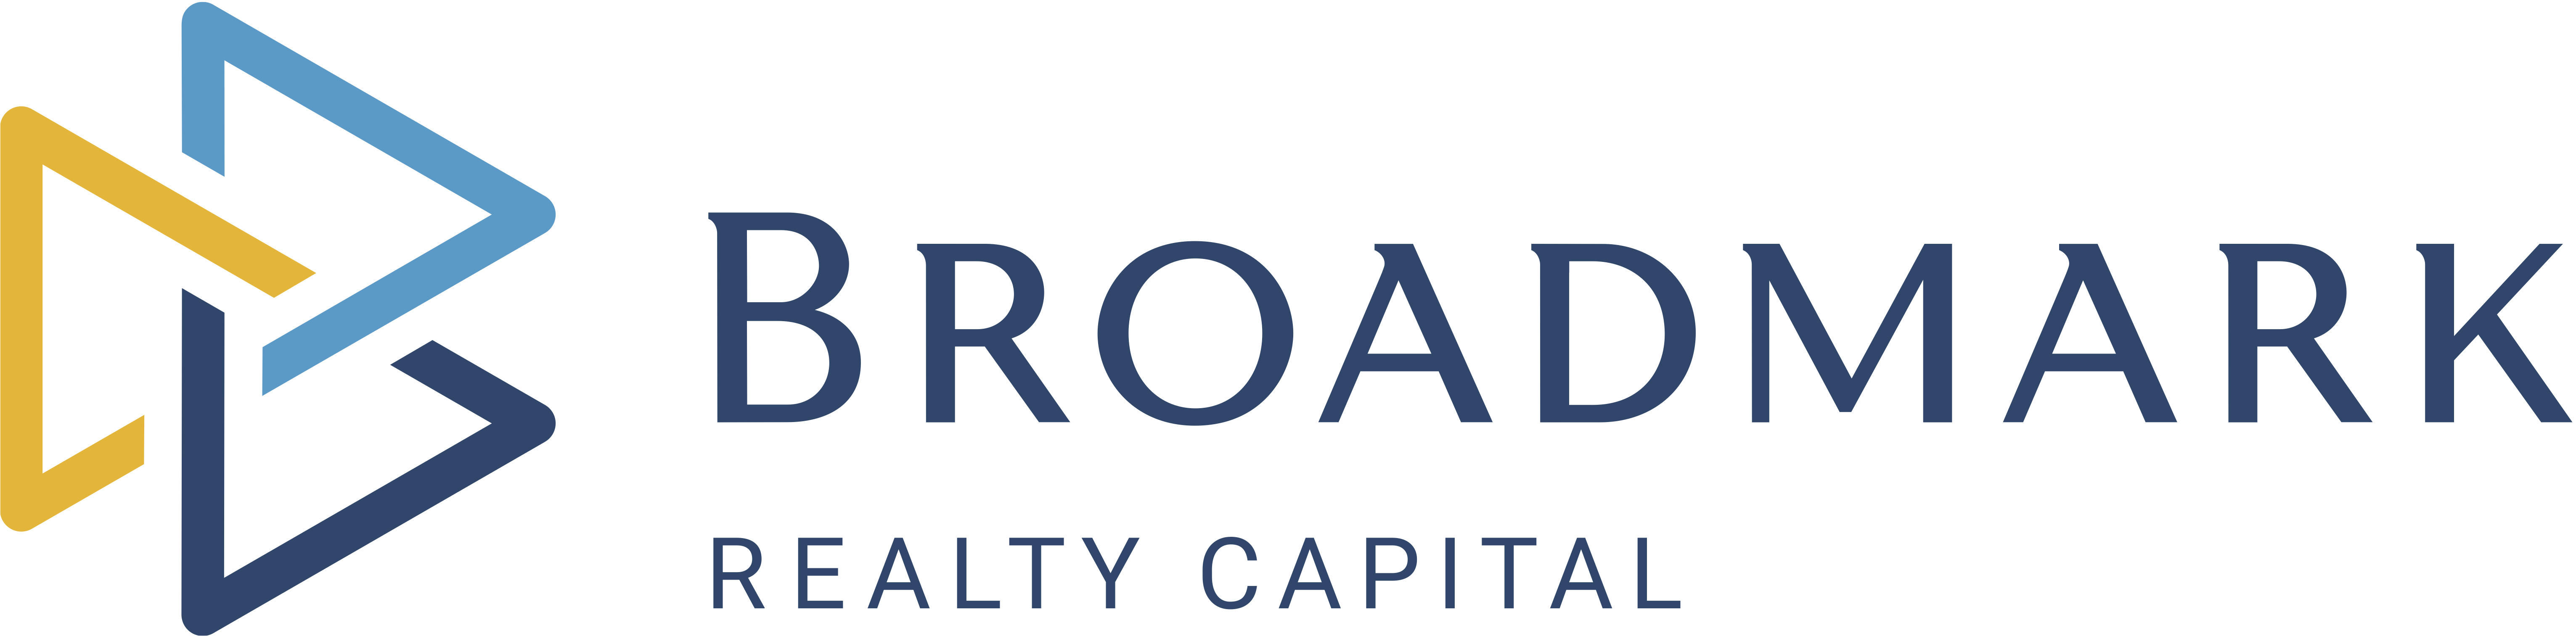 Broadmark Realty Capital Company Logo